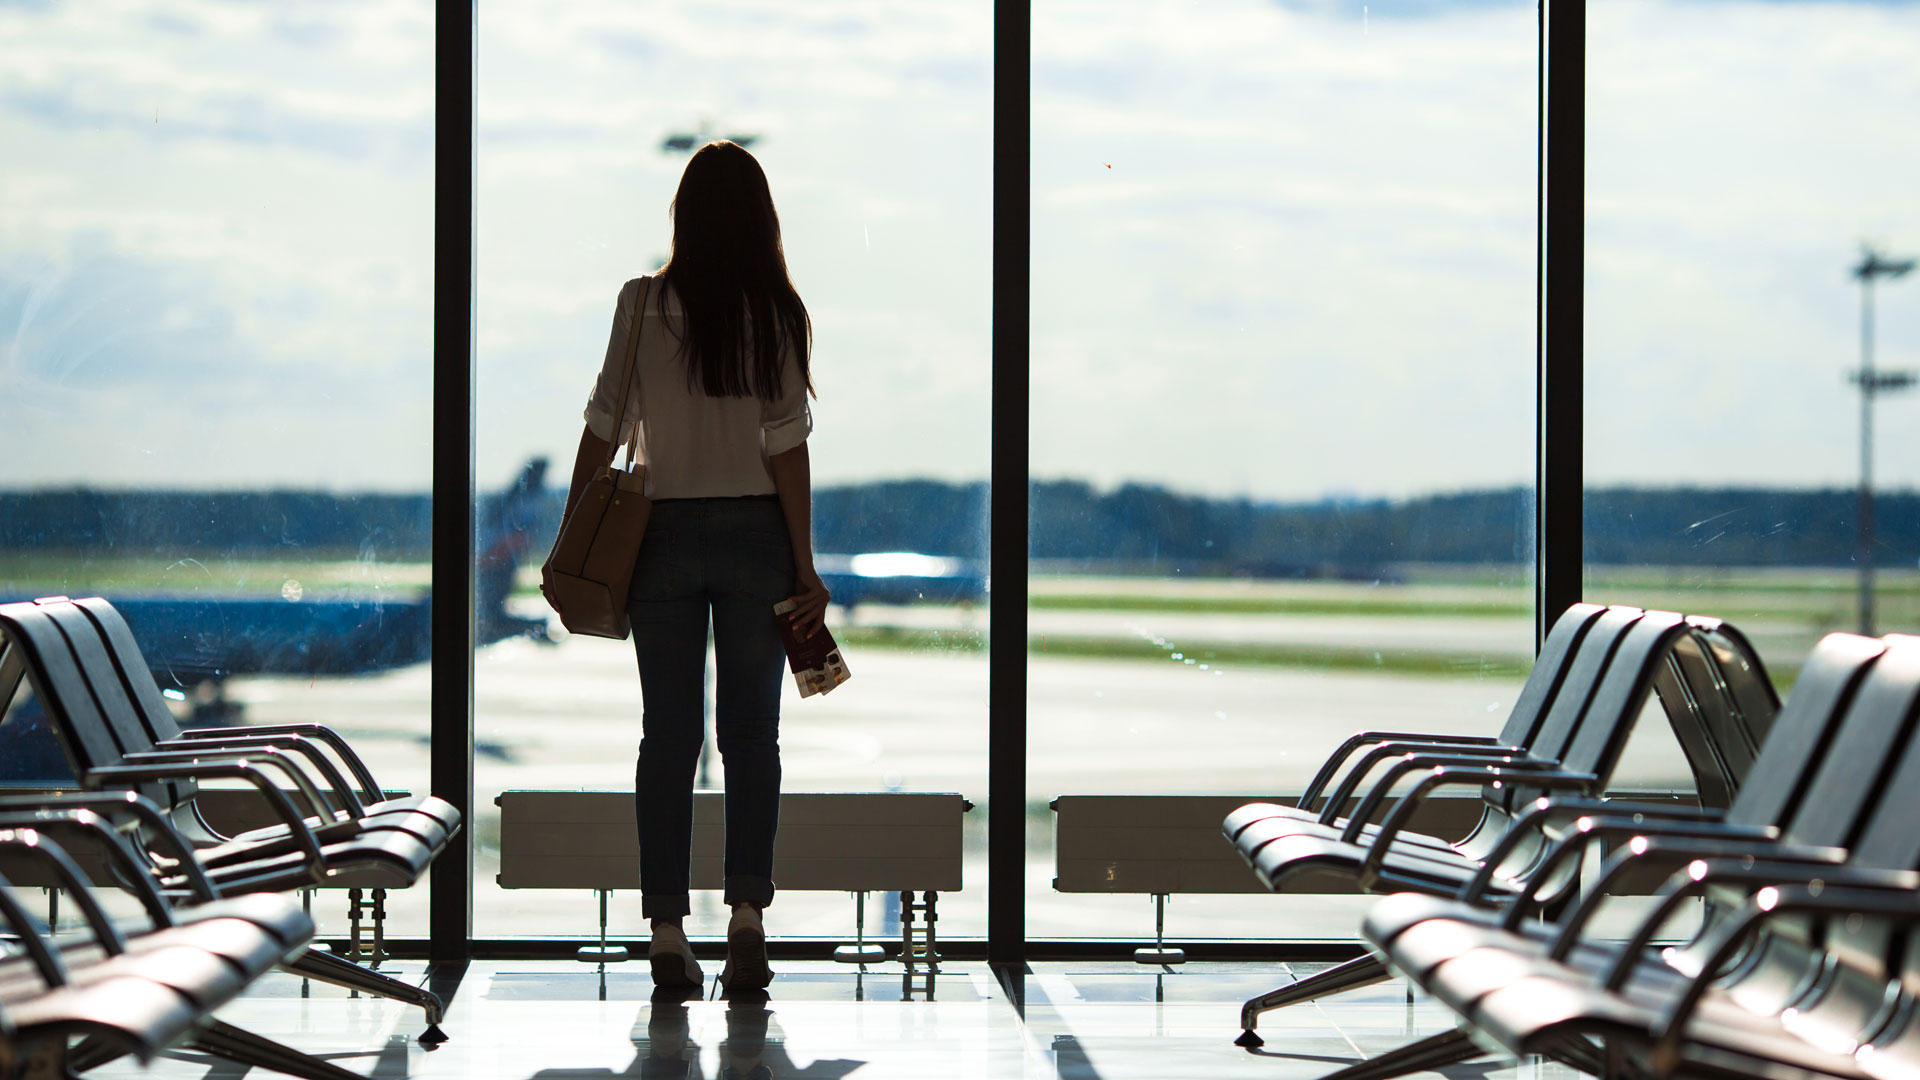 El miedo a volar puede ser muy abrumador para quienes desean viajar a visitar familiares, disfrutar de unas vacaciones o necesitan viajar por trabajo (iStock)